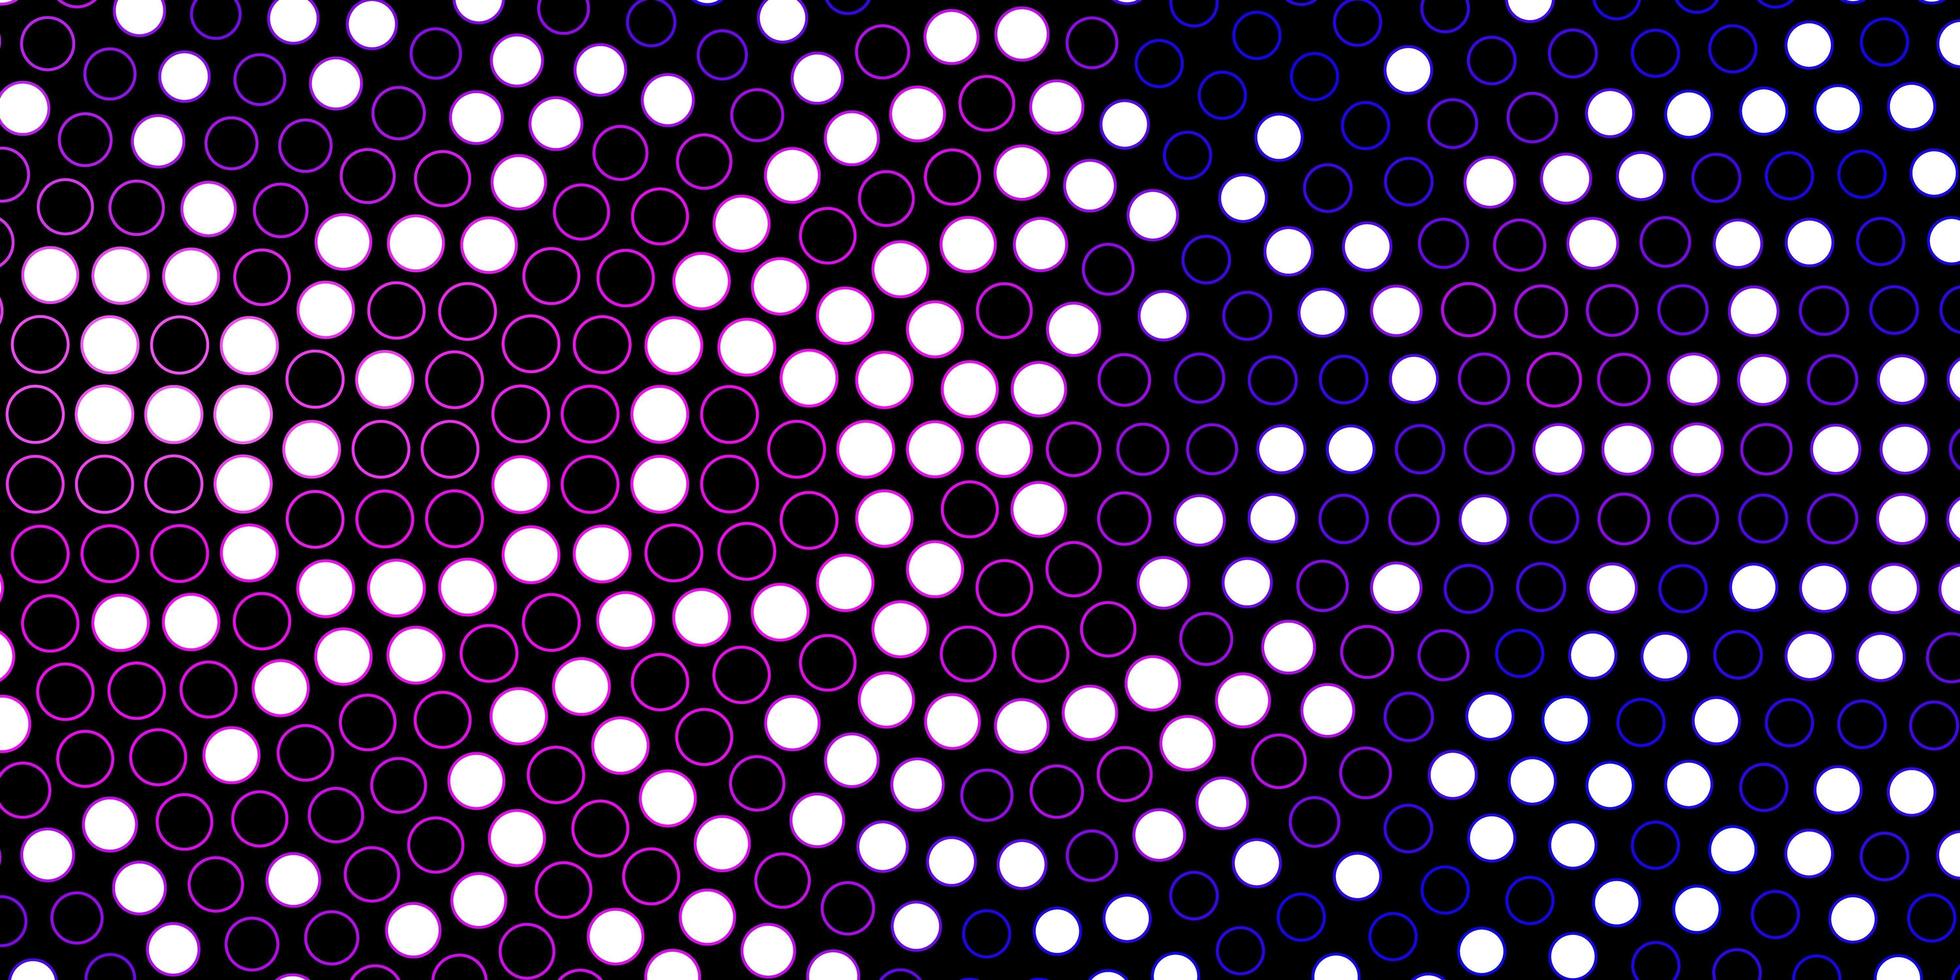 donker paars, roze vector patroon met cirkels. abstracte illustratie met kleurrijke vlekken in natuurstijl. ontwerp voor posters, banners.